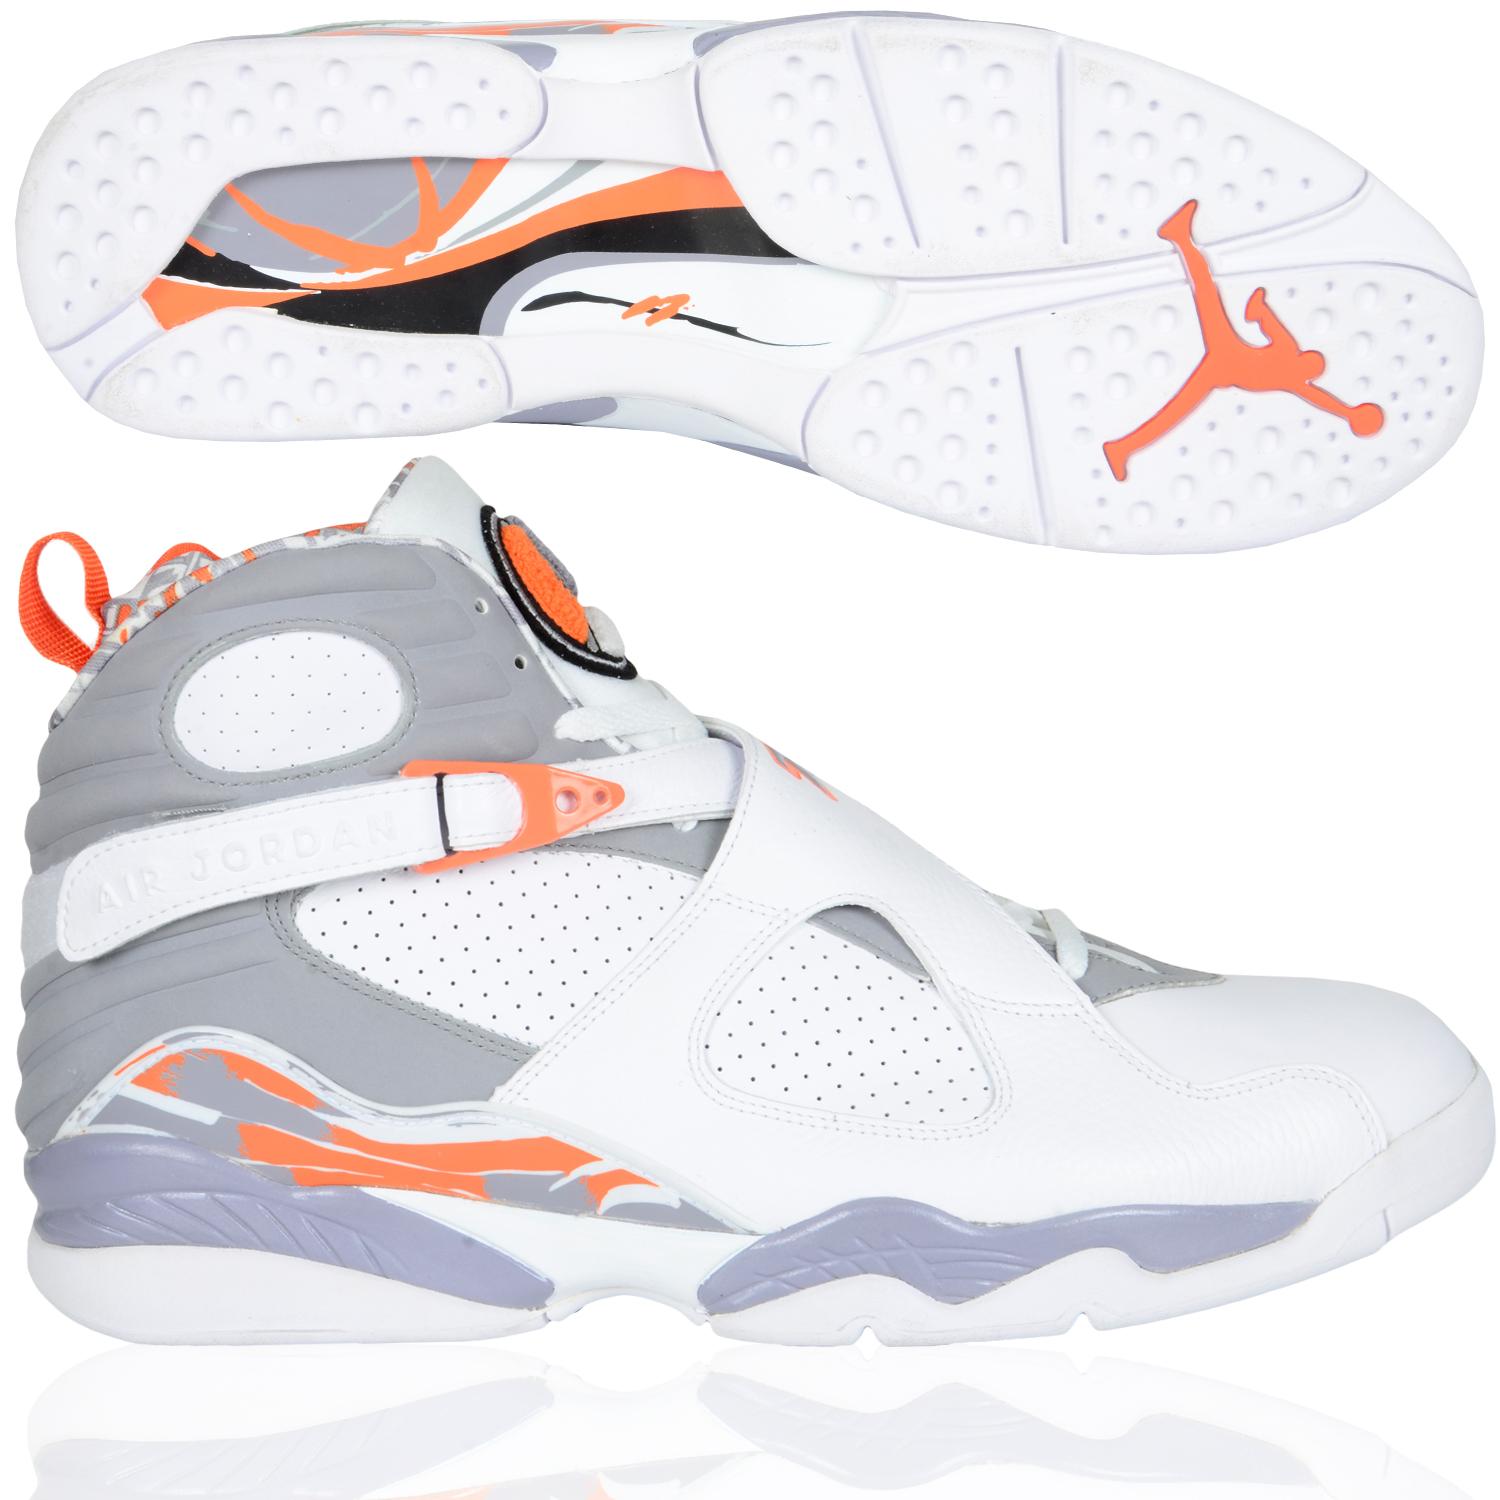 Foto Nike Shoe Air Jordan 8 Retro Zapatillas De Baloncesto Blanco Naranja